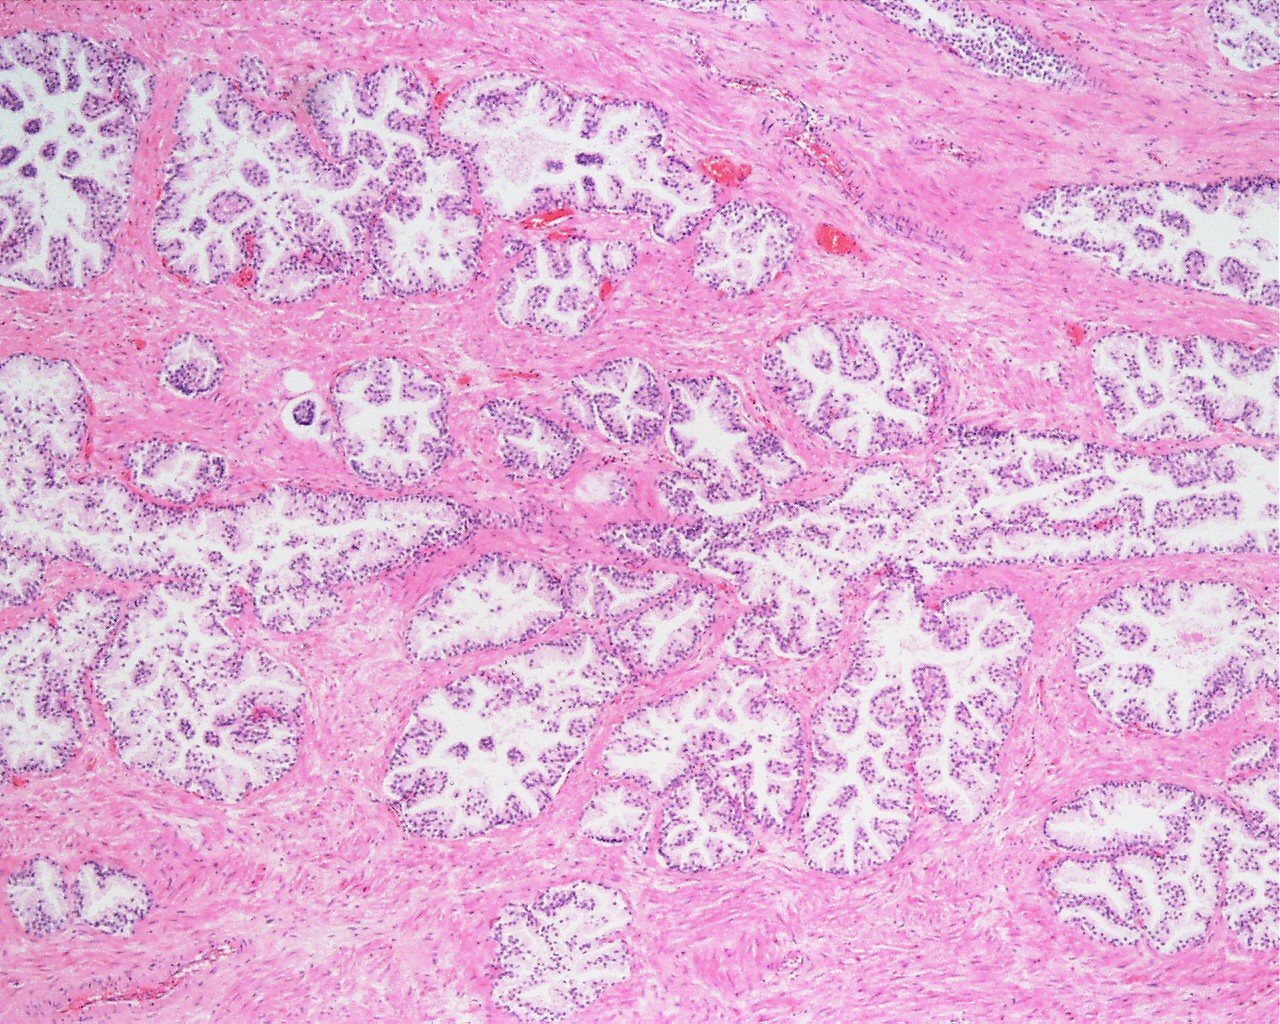 File:Prostate histology 04.jpg - Embryology